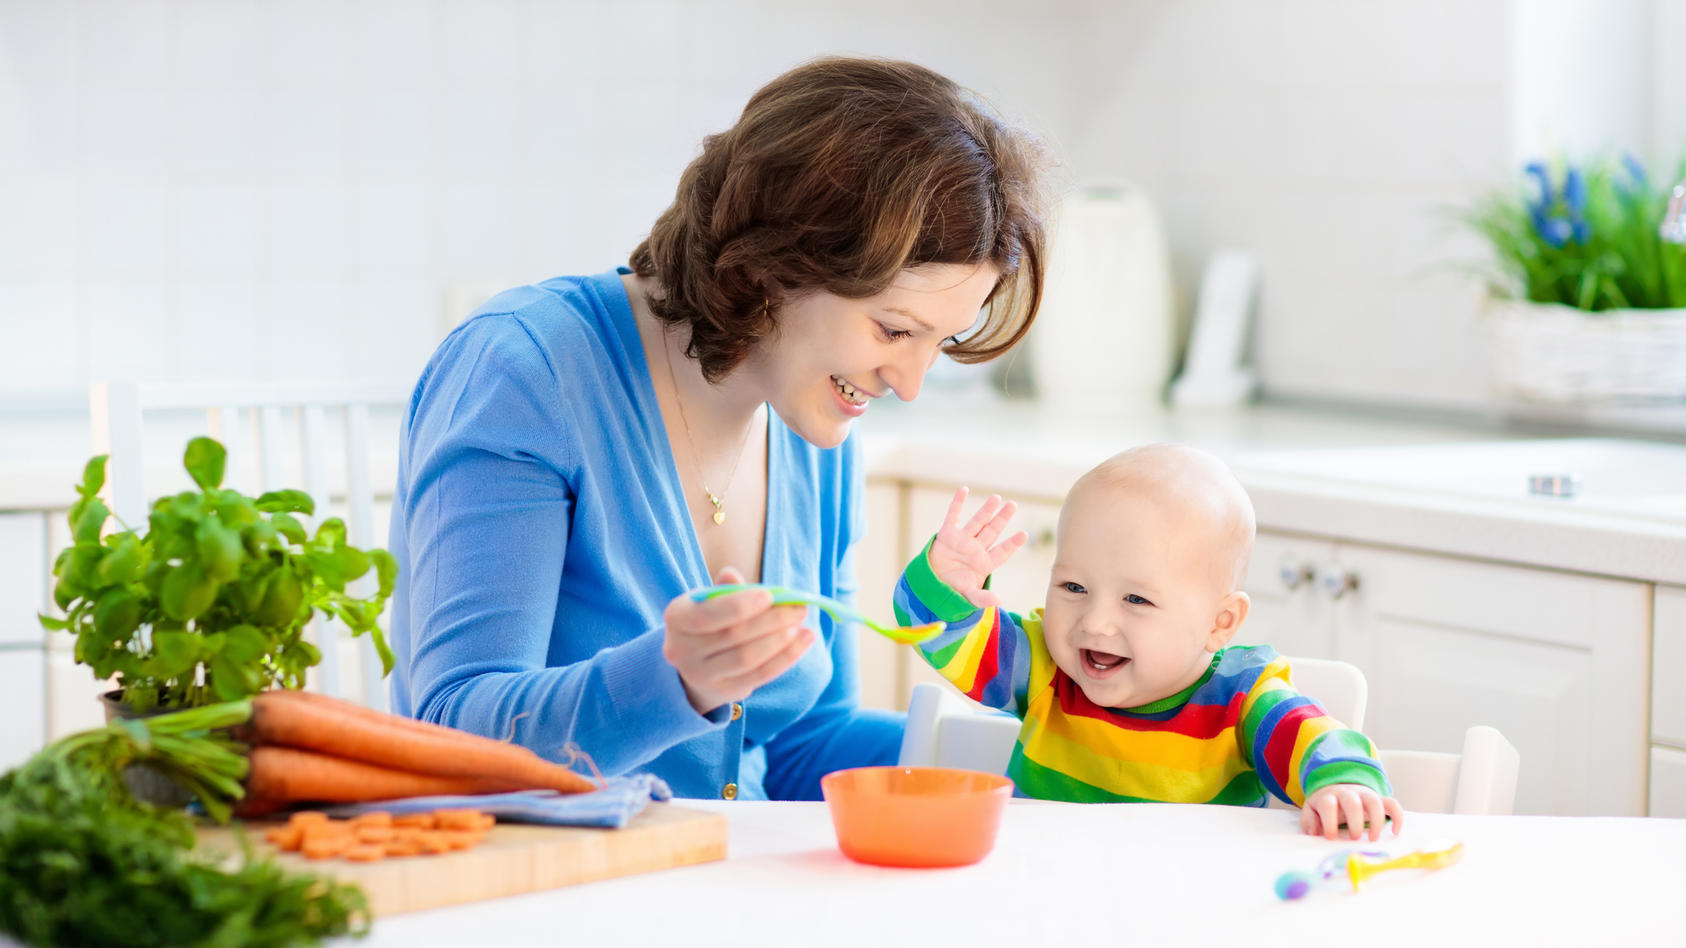 Kinderbetreuung zuhause: Die Tagesmutter betreut die Kleinen, während die Eltern bei der Arbeit sind und können Ihnen einiges von der alltäglichen Last abnehmen.